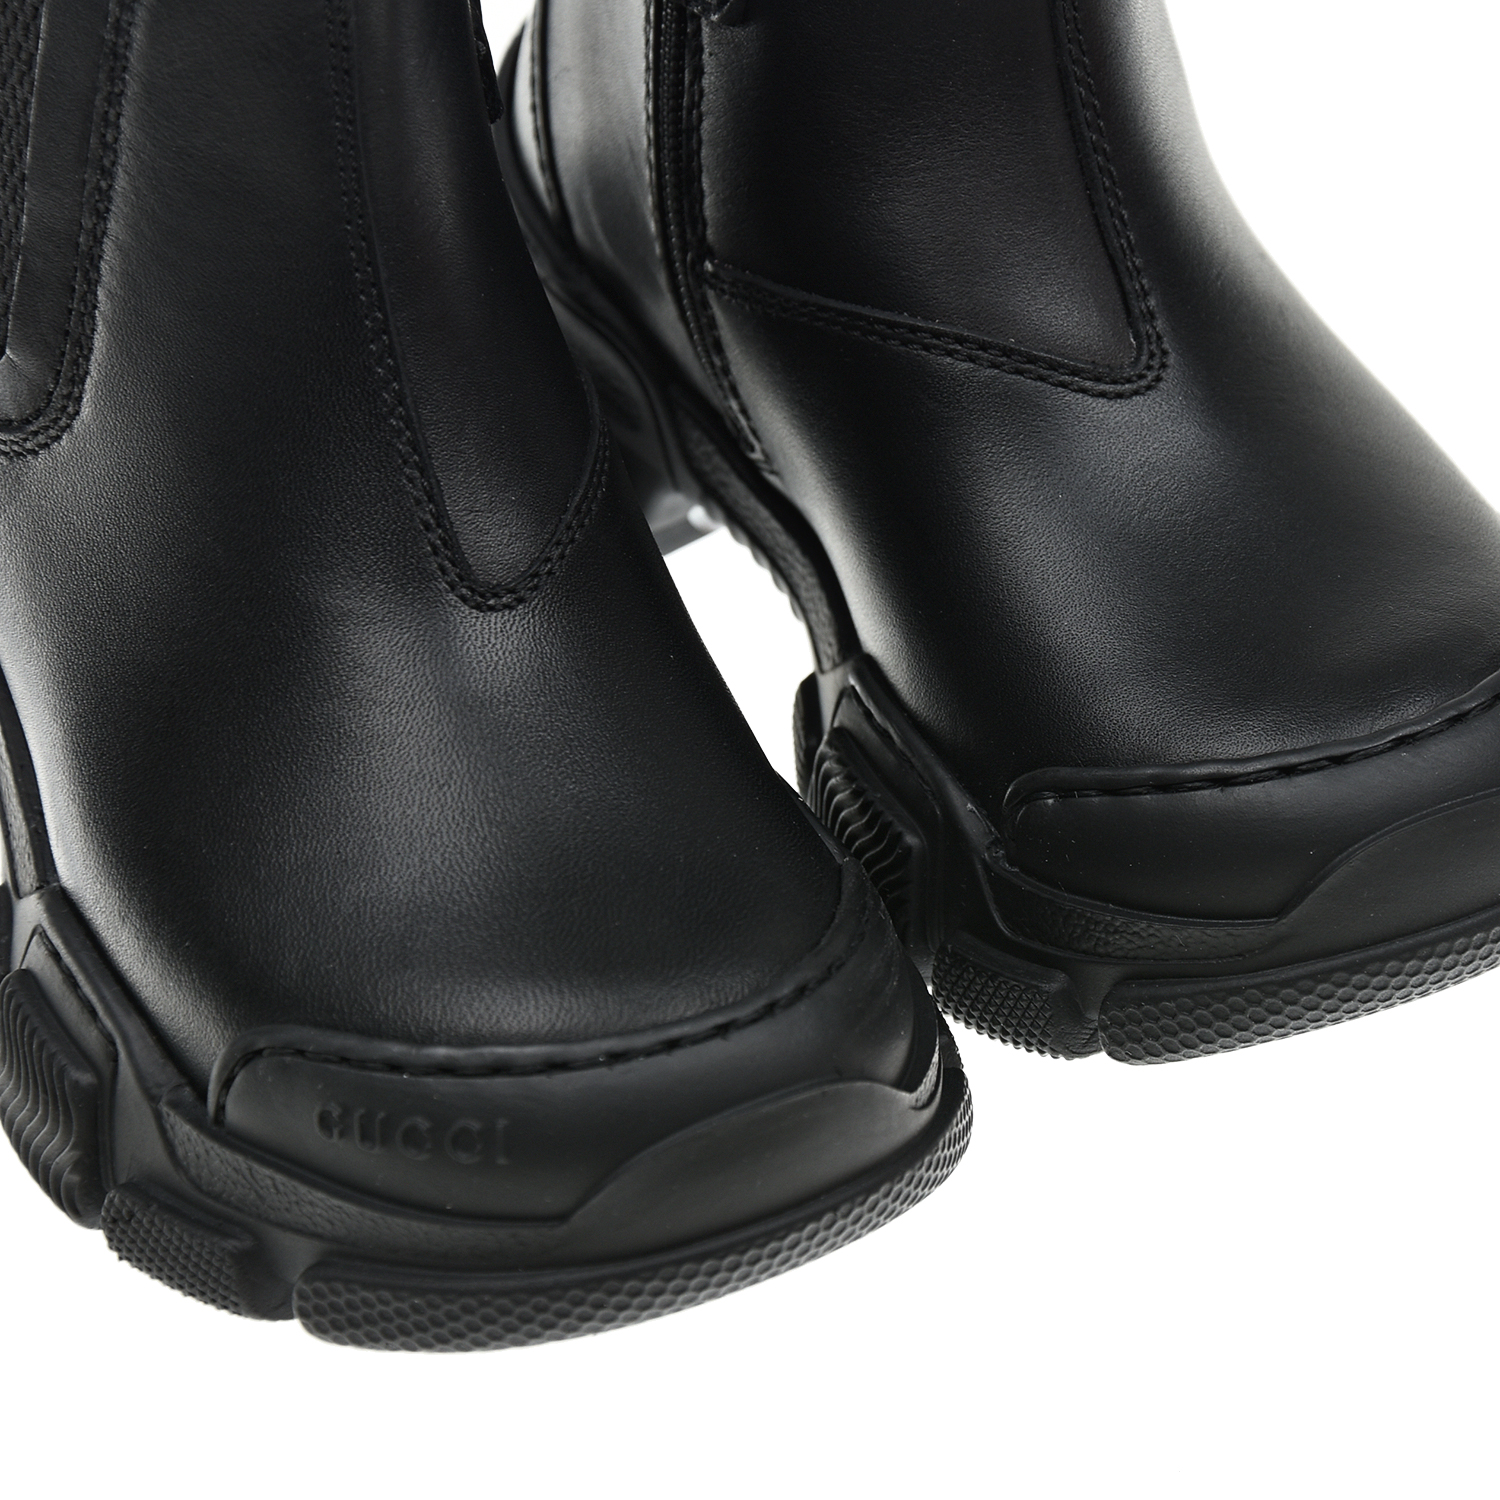 Ботинки на массивной подошве GUCCI детские, размер 29, цвет черный - фото 7